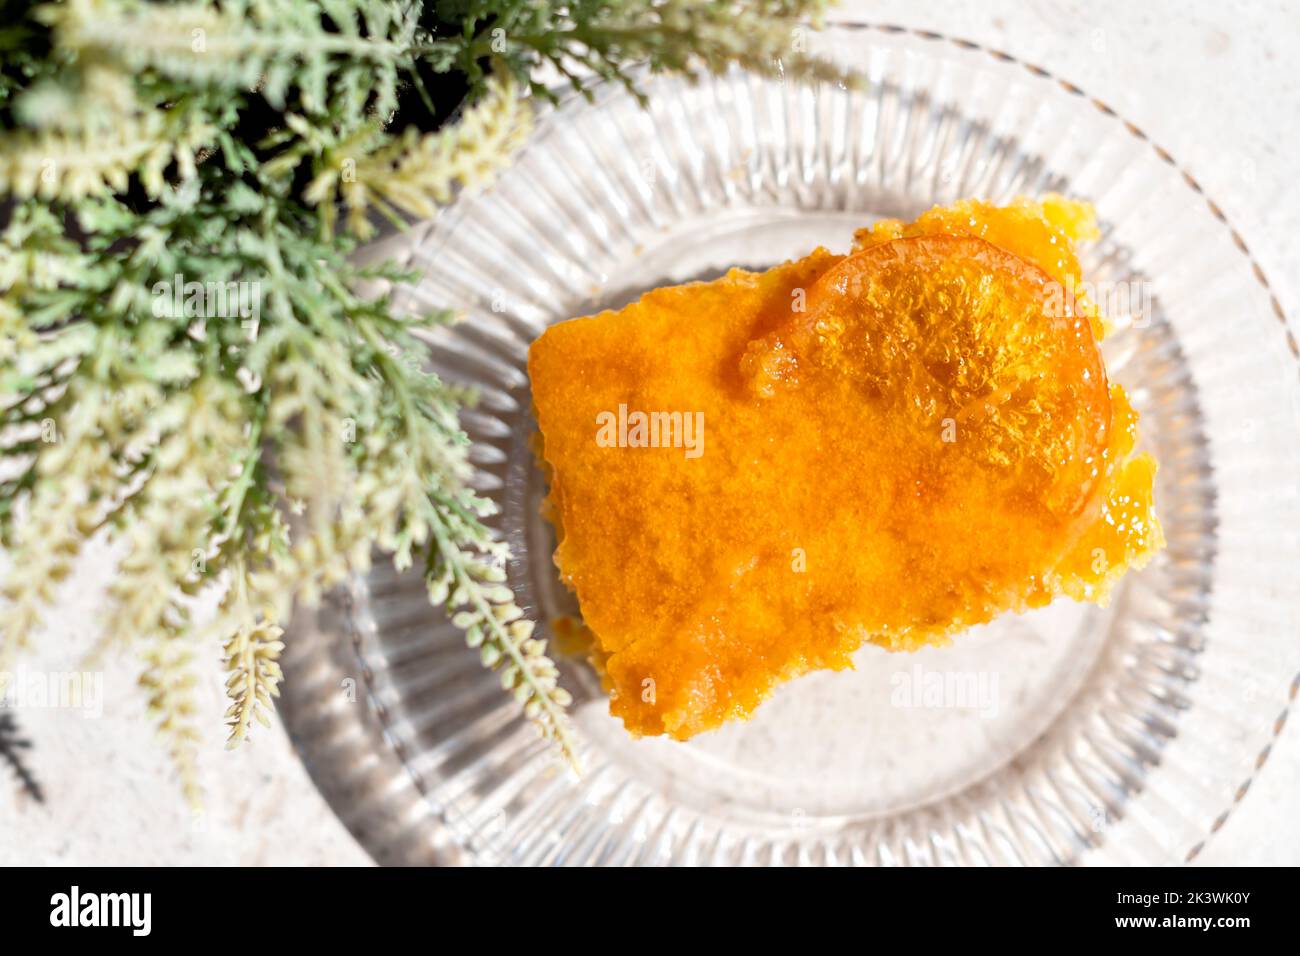 Eine Portion oder ein Stück Orange Pie. Dies ist eine griechische Spezialität, die als Portokalopita bekannt ist. Er wird aus Phyllo-Gebäck hergestellt und in einen Orangensirup eingeweicht Stockfoto